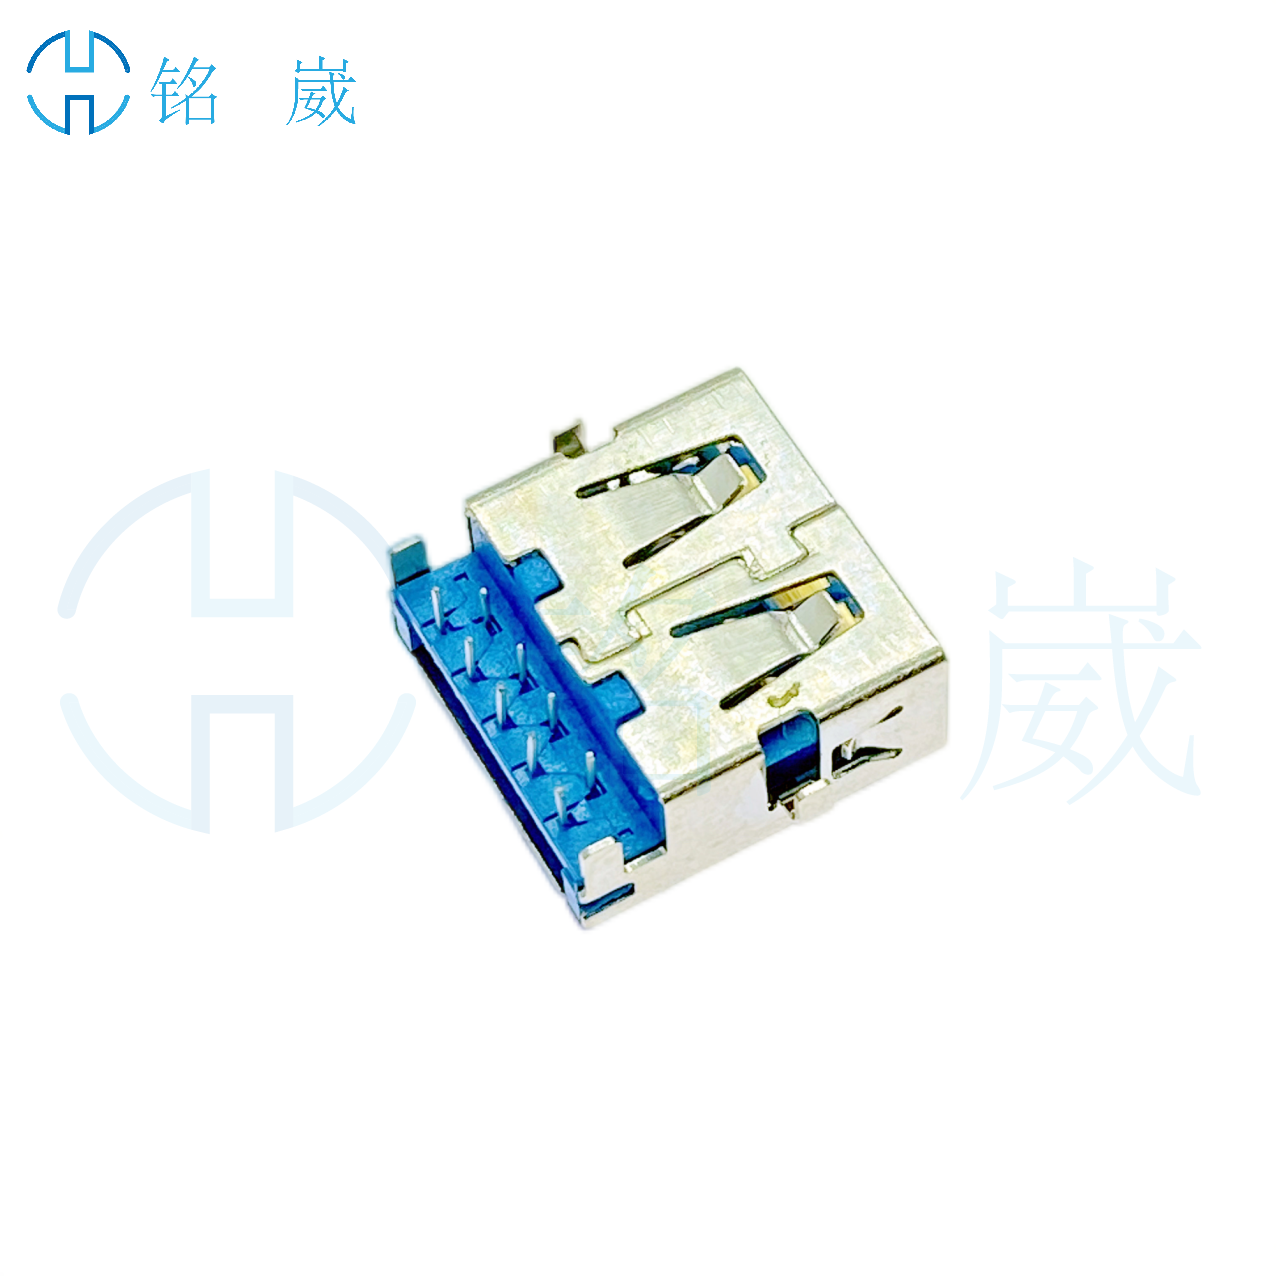 9PinA母座USB3.0沉板4.2mm母座 四脚90度插DIP 直边13.0mm 蓝色胶芯/白色胶芯图片